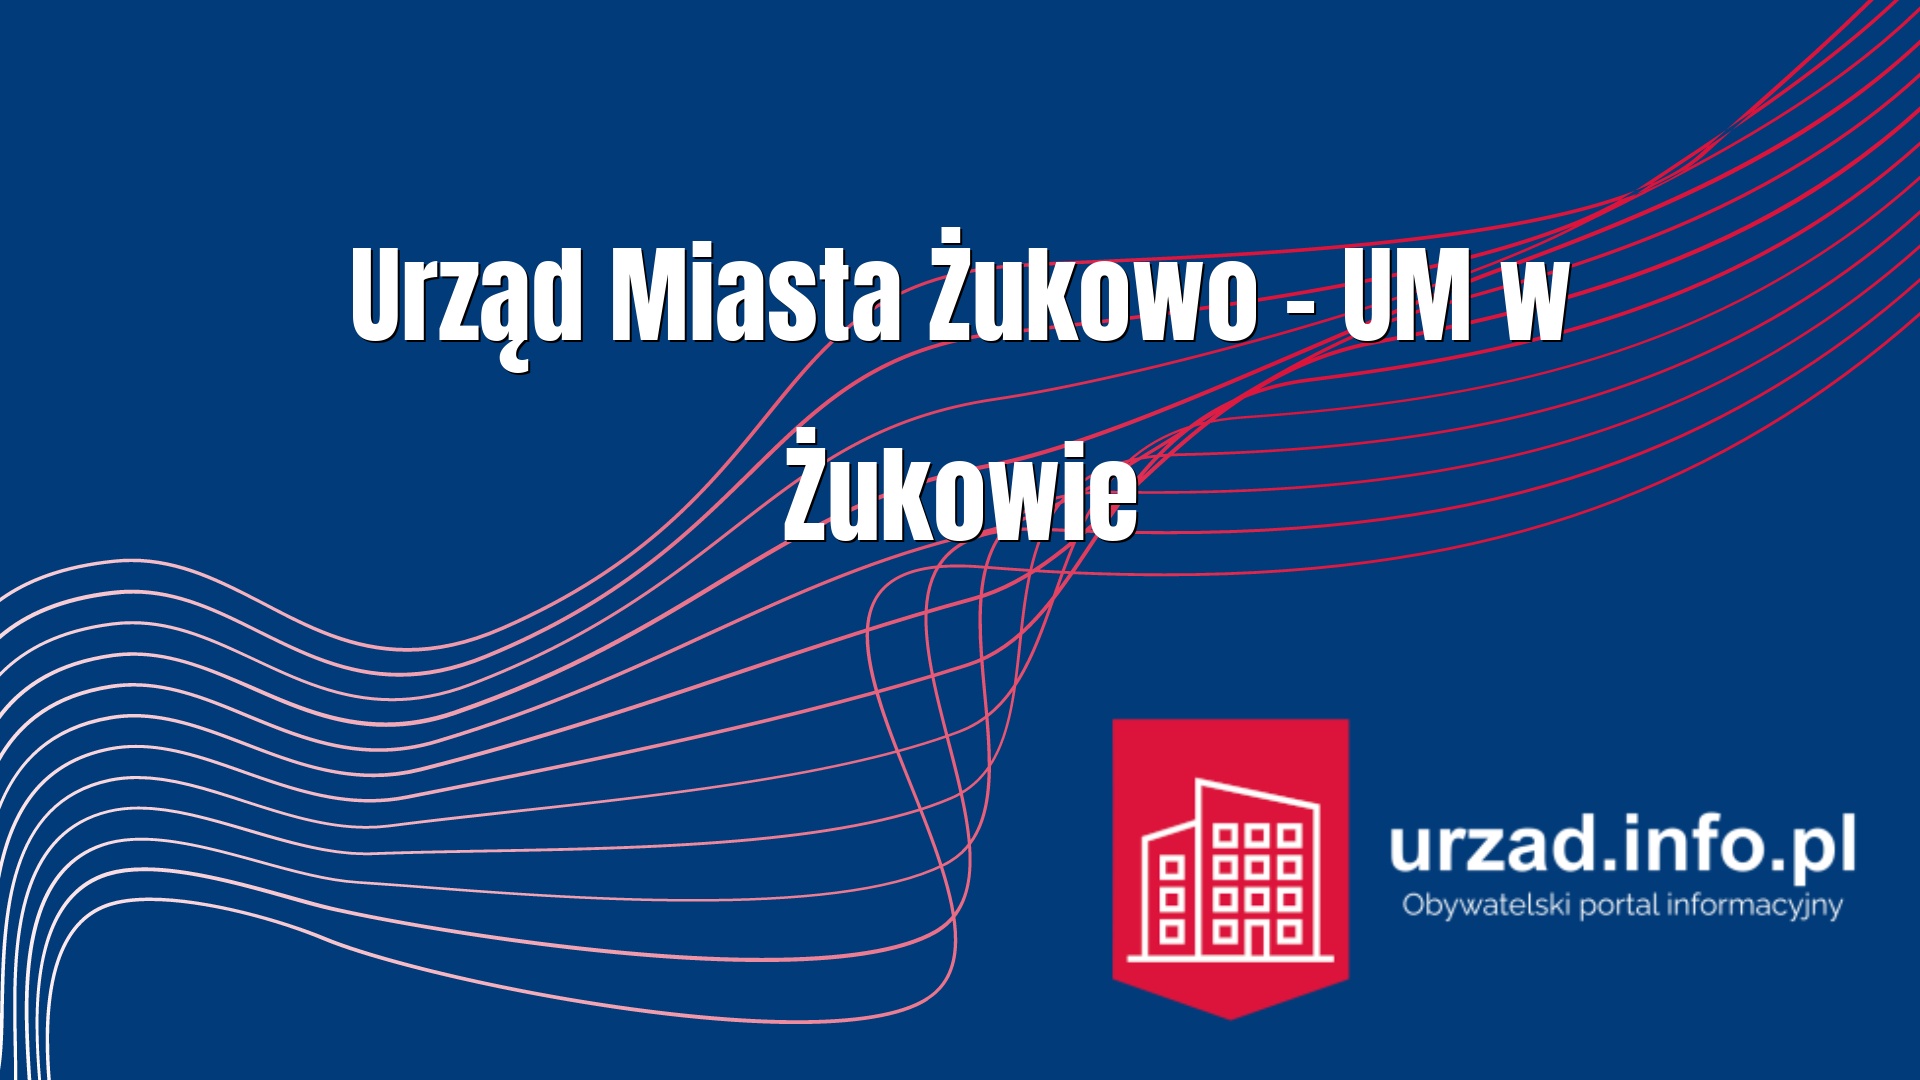 Urząd Miasta Żukowo – UM w Żukowie